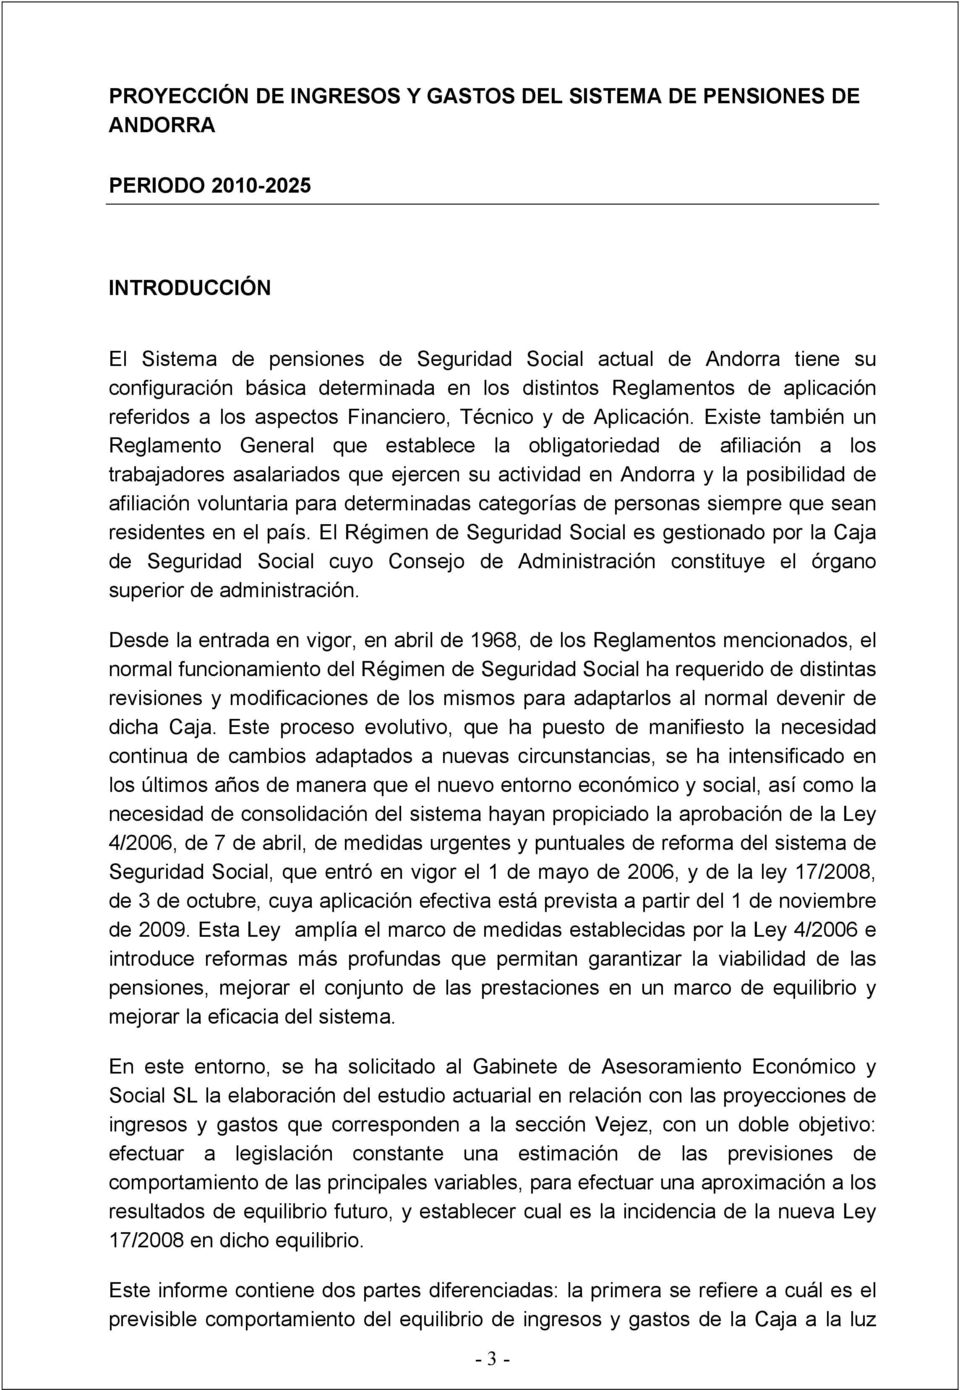 Existe también un Reglamento General que establece la obligatoriedad de afiliación a los trabajadores asalariados que ejercen su actividad en Andorra y la posibilidad de afiliación voluntaria para